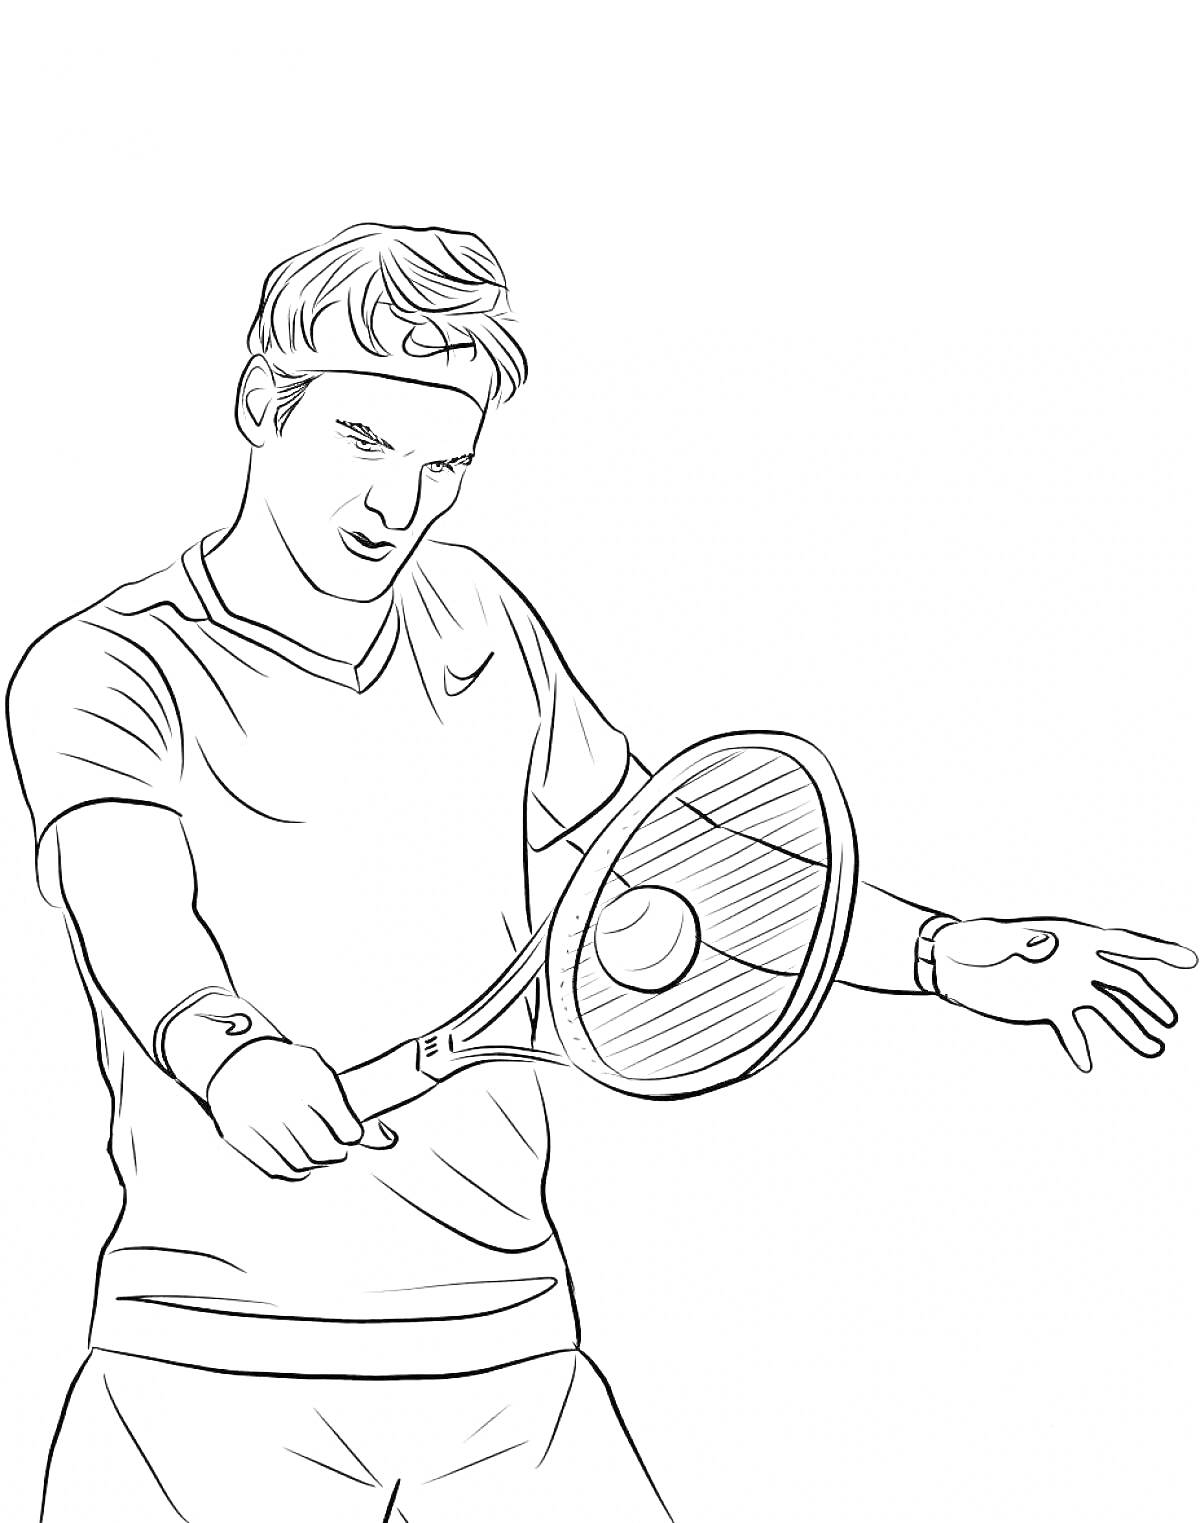 Раскраска Теннисист с ракеткой, делающий удар по мячу